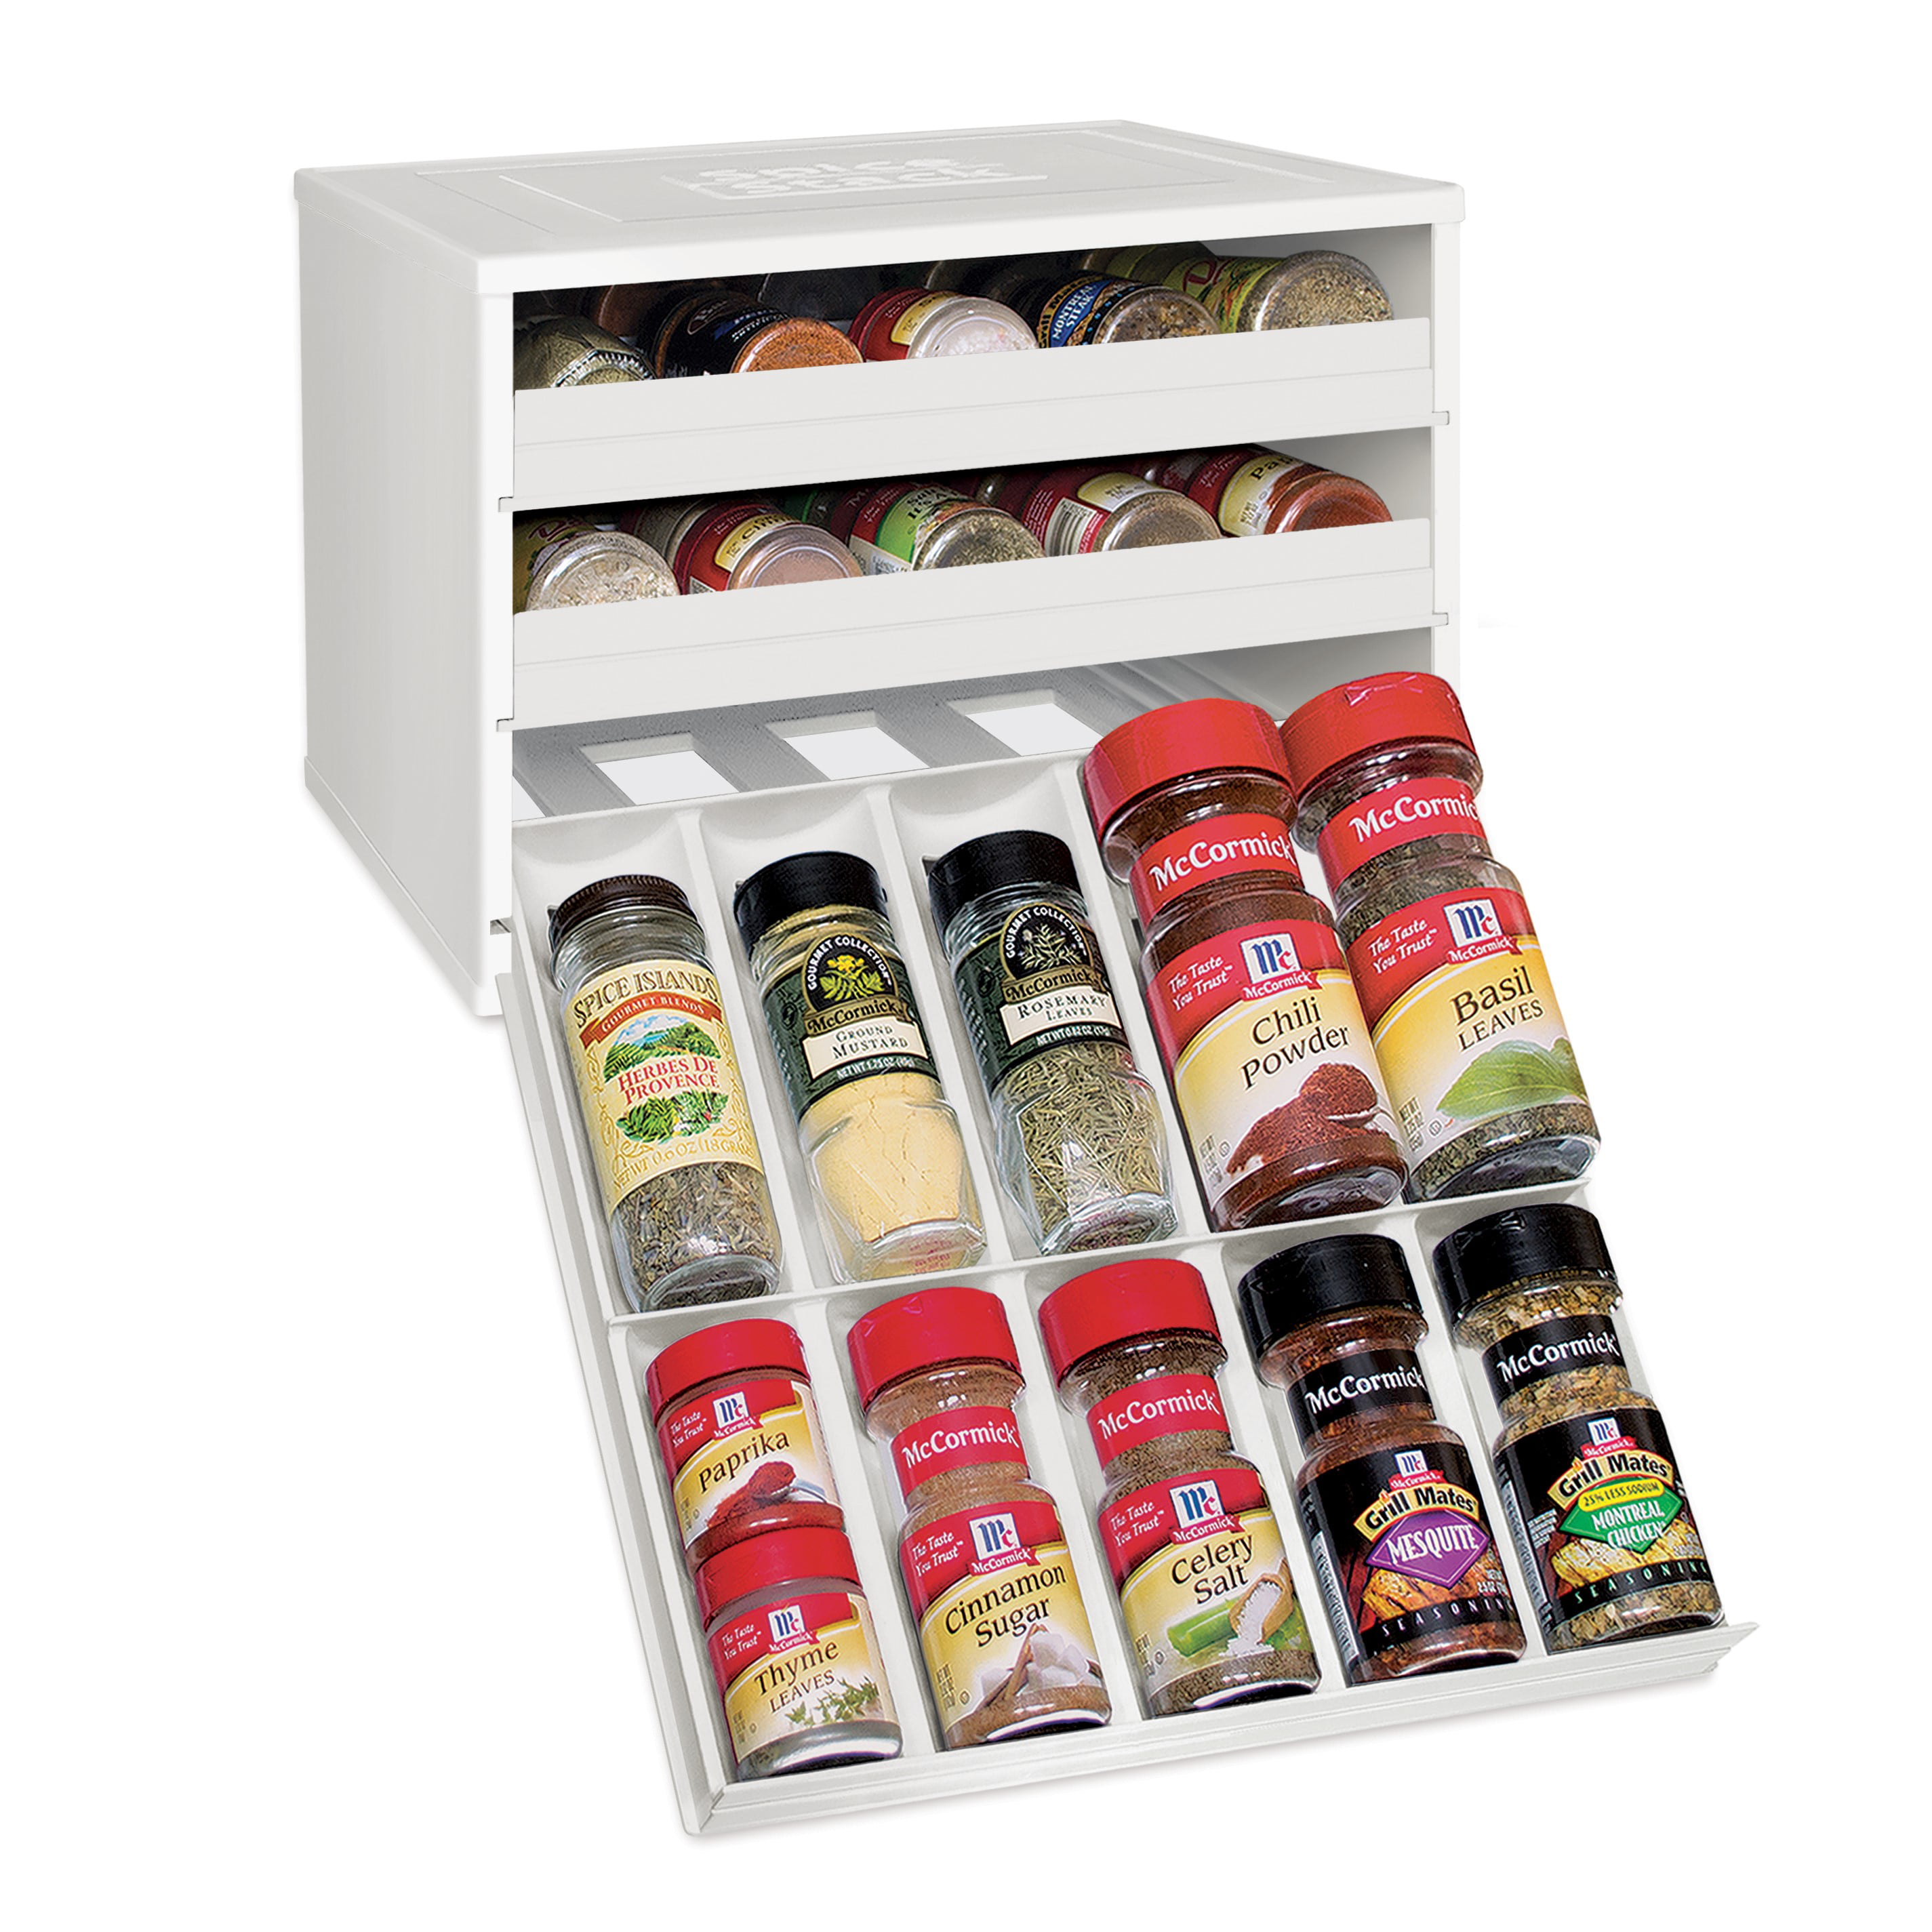 SpiceStack® Adjustable Spice Rack Organizer, White